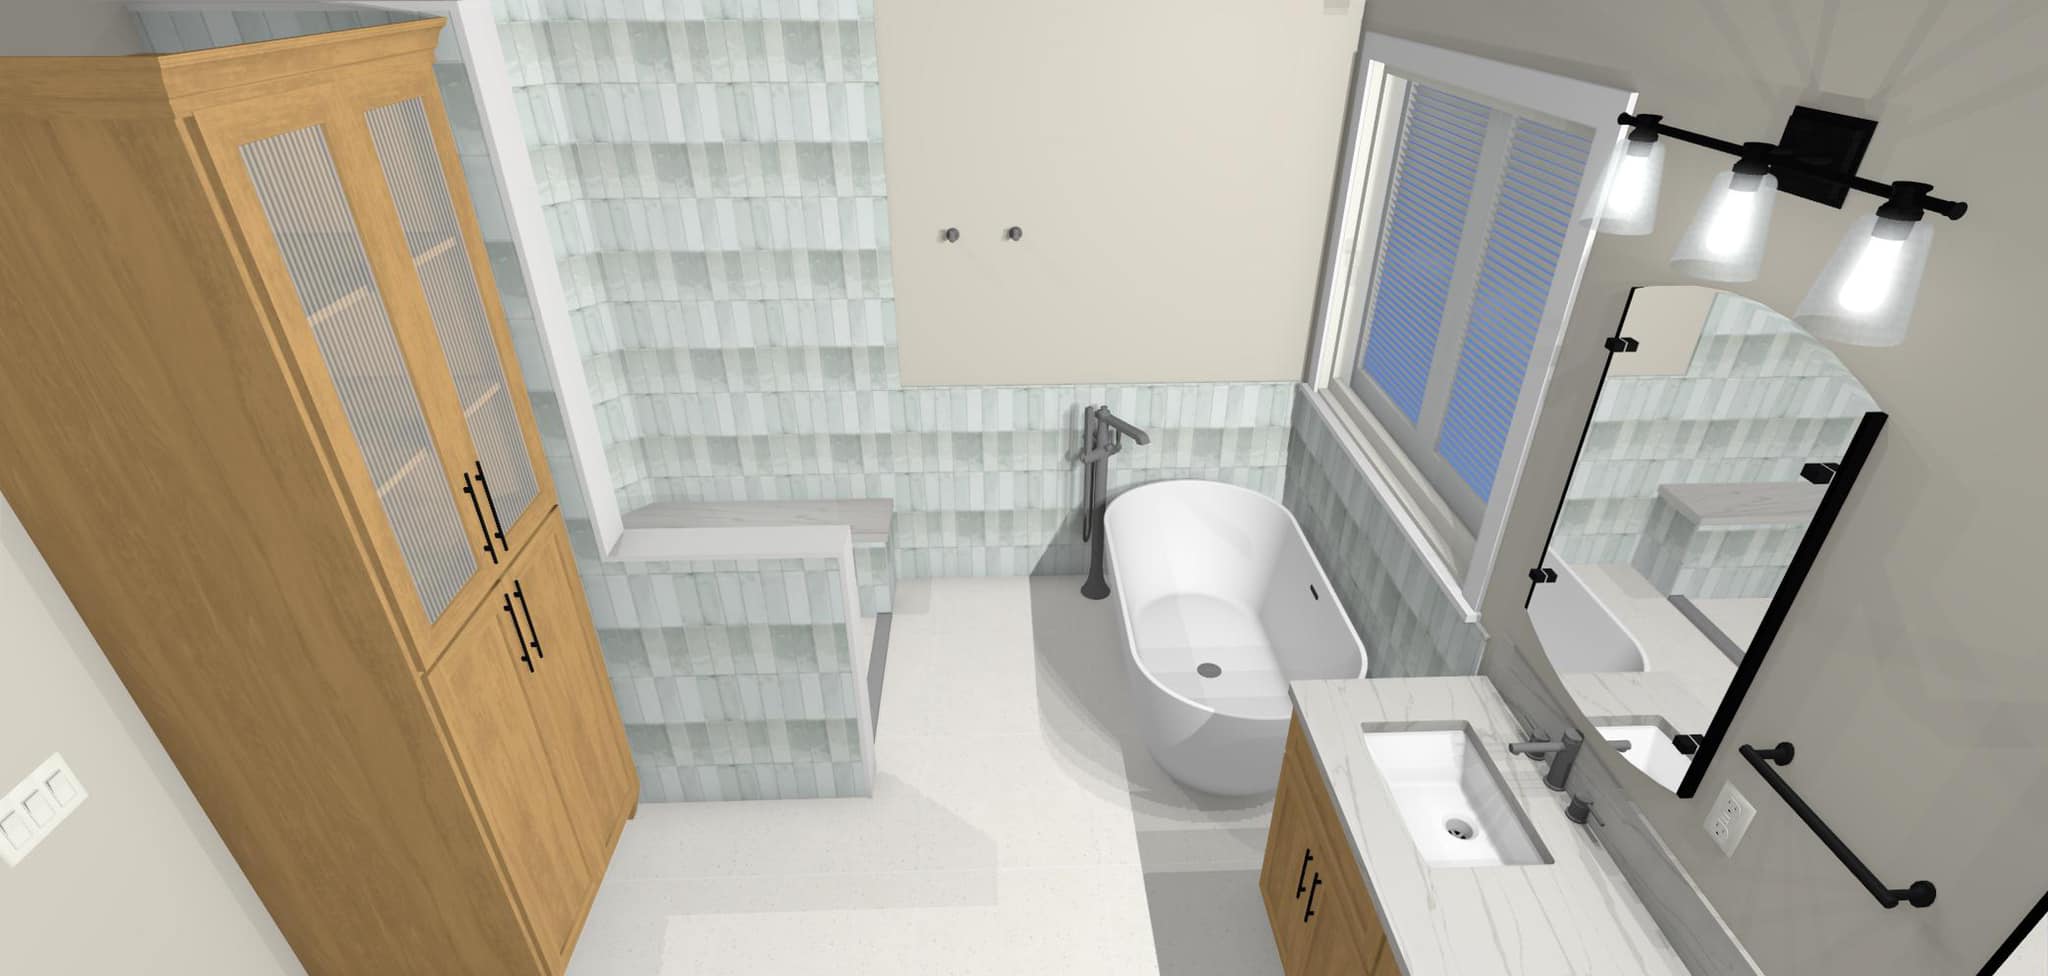 Bathroom Renderings with free standing tub